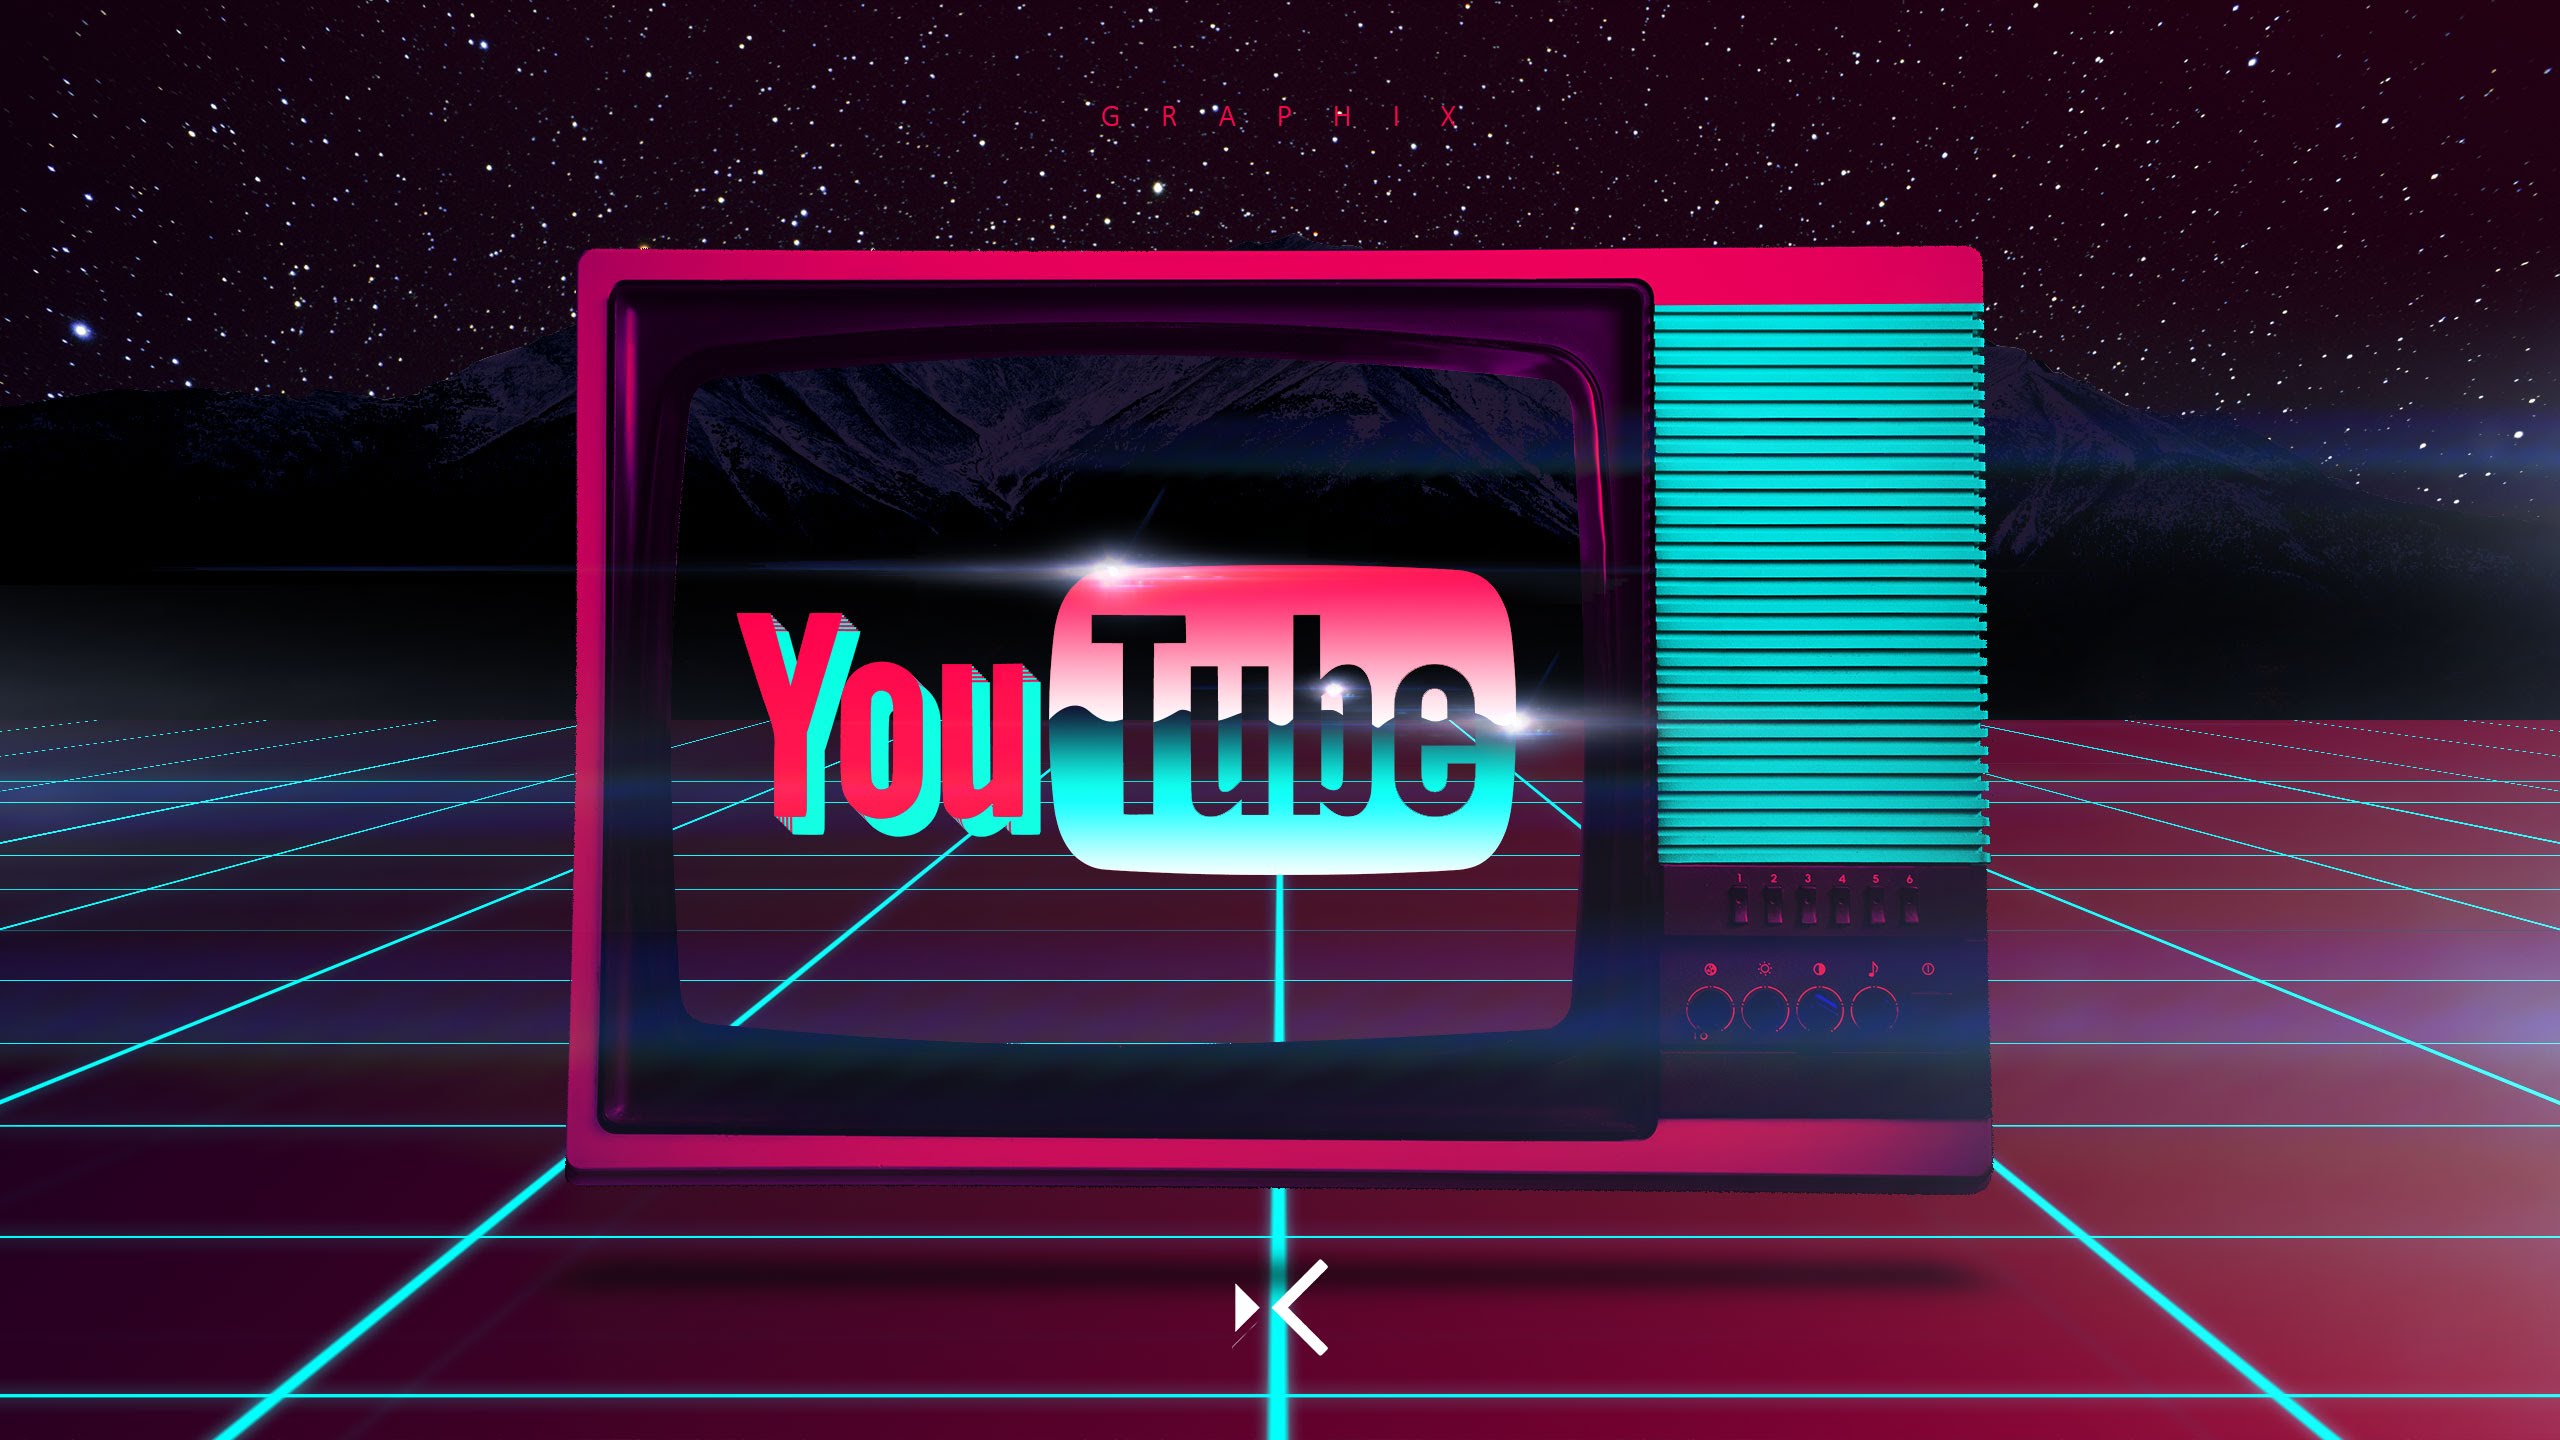 sfondo per il canale youtube,neon,disegno grafico,illuminazione ad effetto visivo,insegna al neon,font